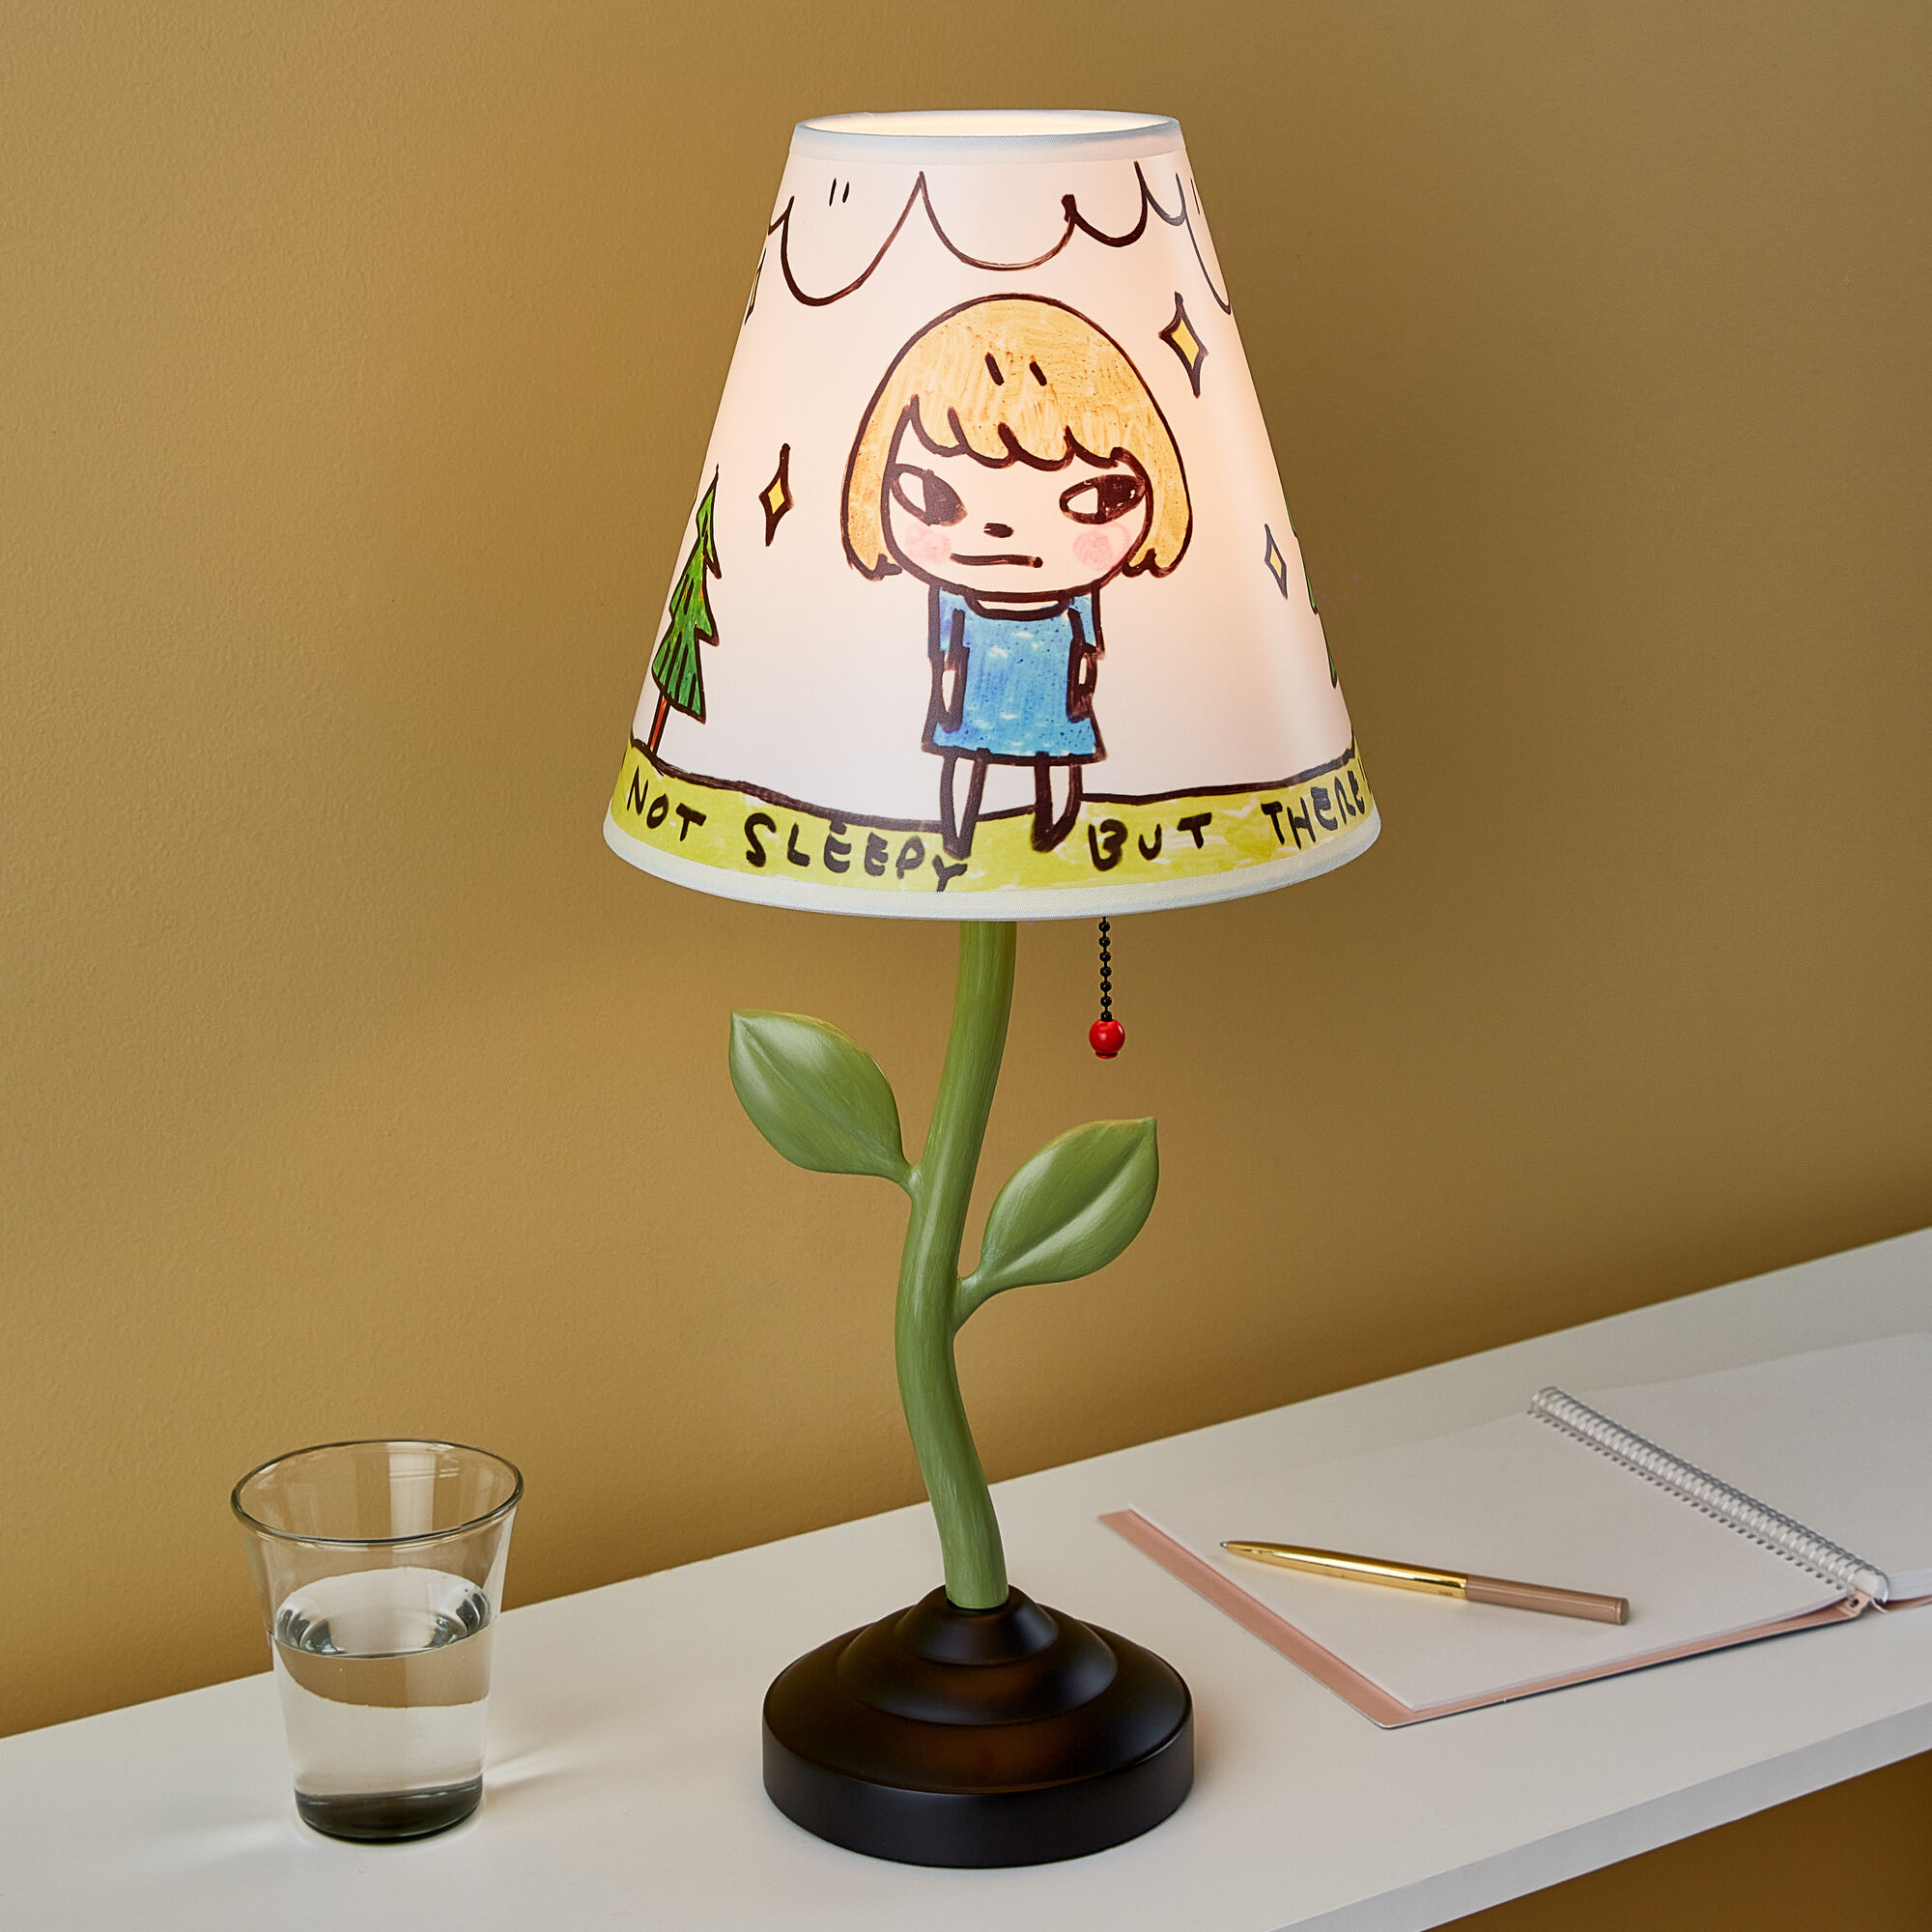 アーティスト・奈良美智のアートが描かれたランプがMoMAのストアから ...